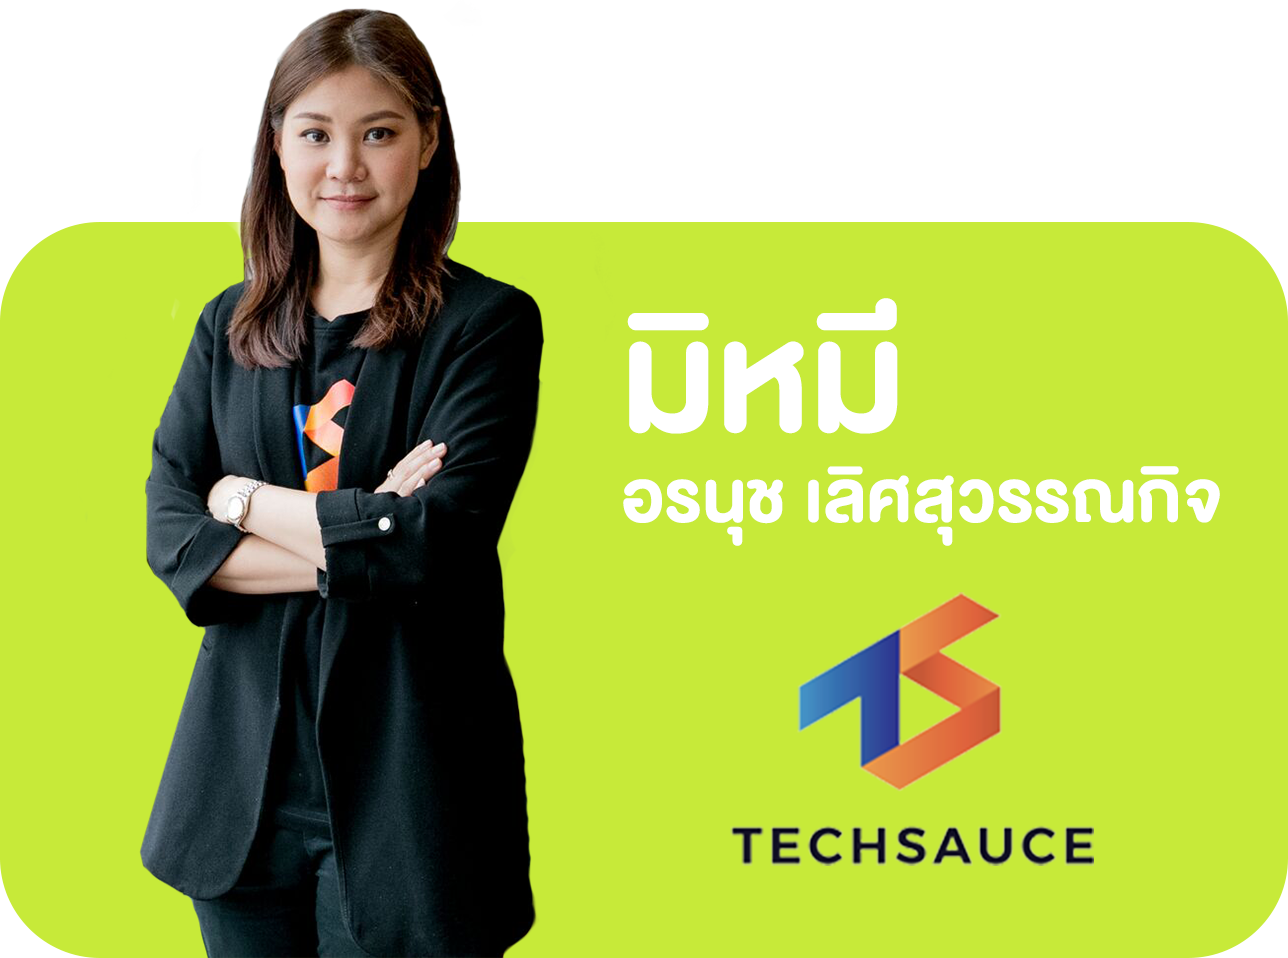 มิหมี อรนุช เลิศสุวรรณกิจ Startup Thailand ผู้ก่อตั้ง TECHSAUCE